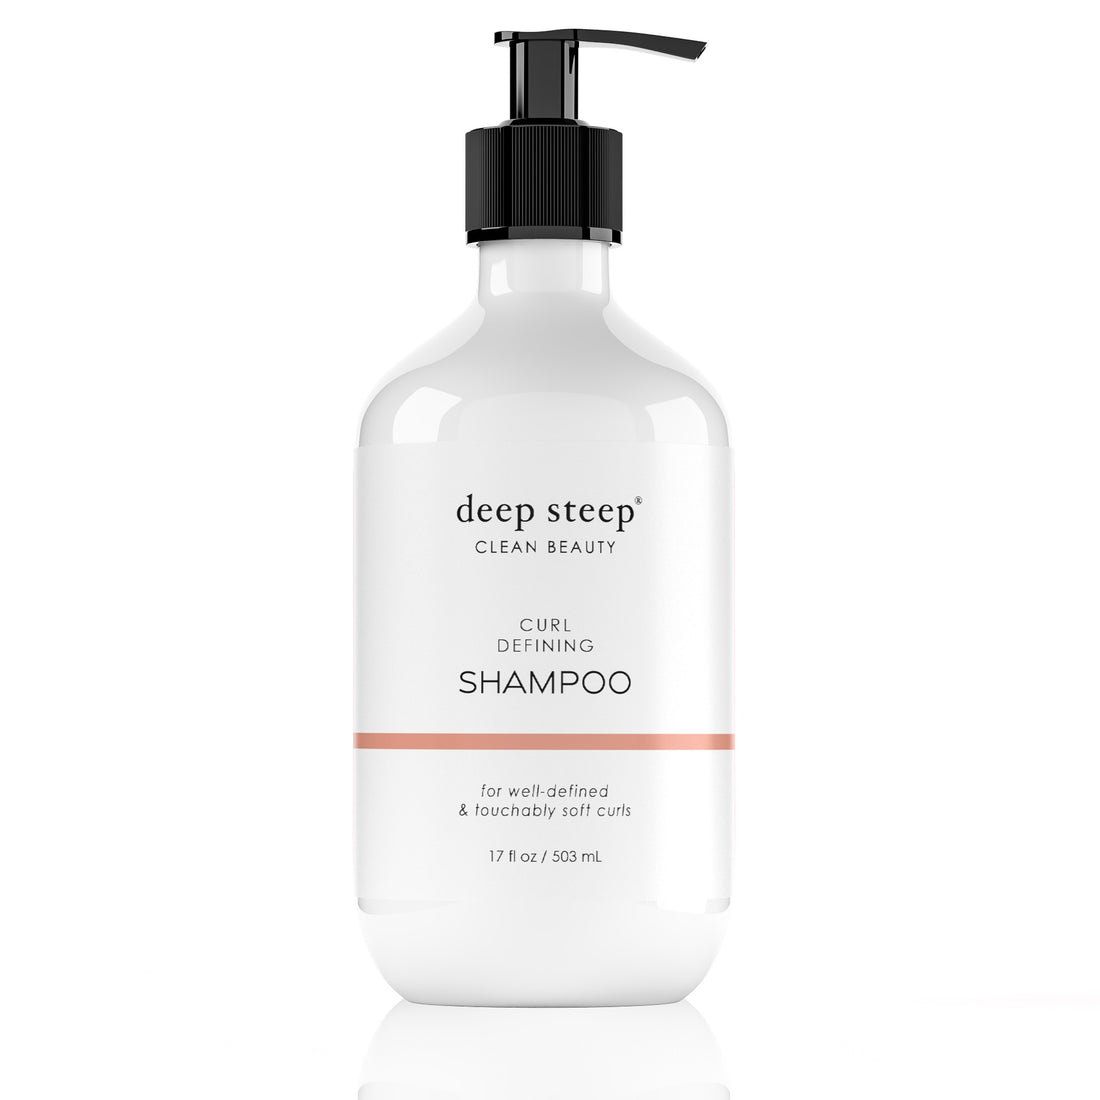 Curl Defining Shampoo